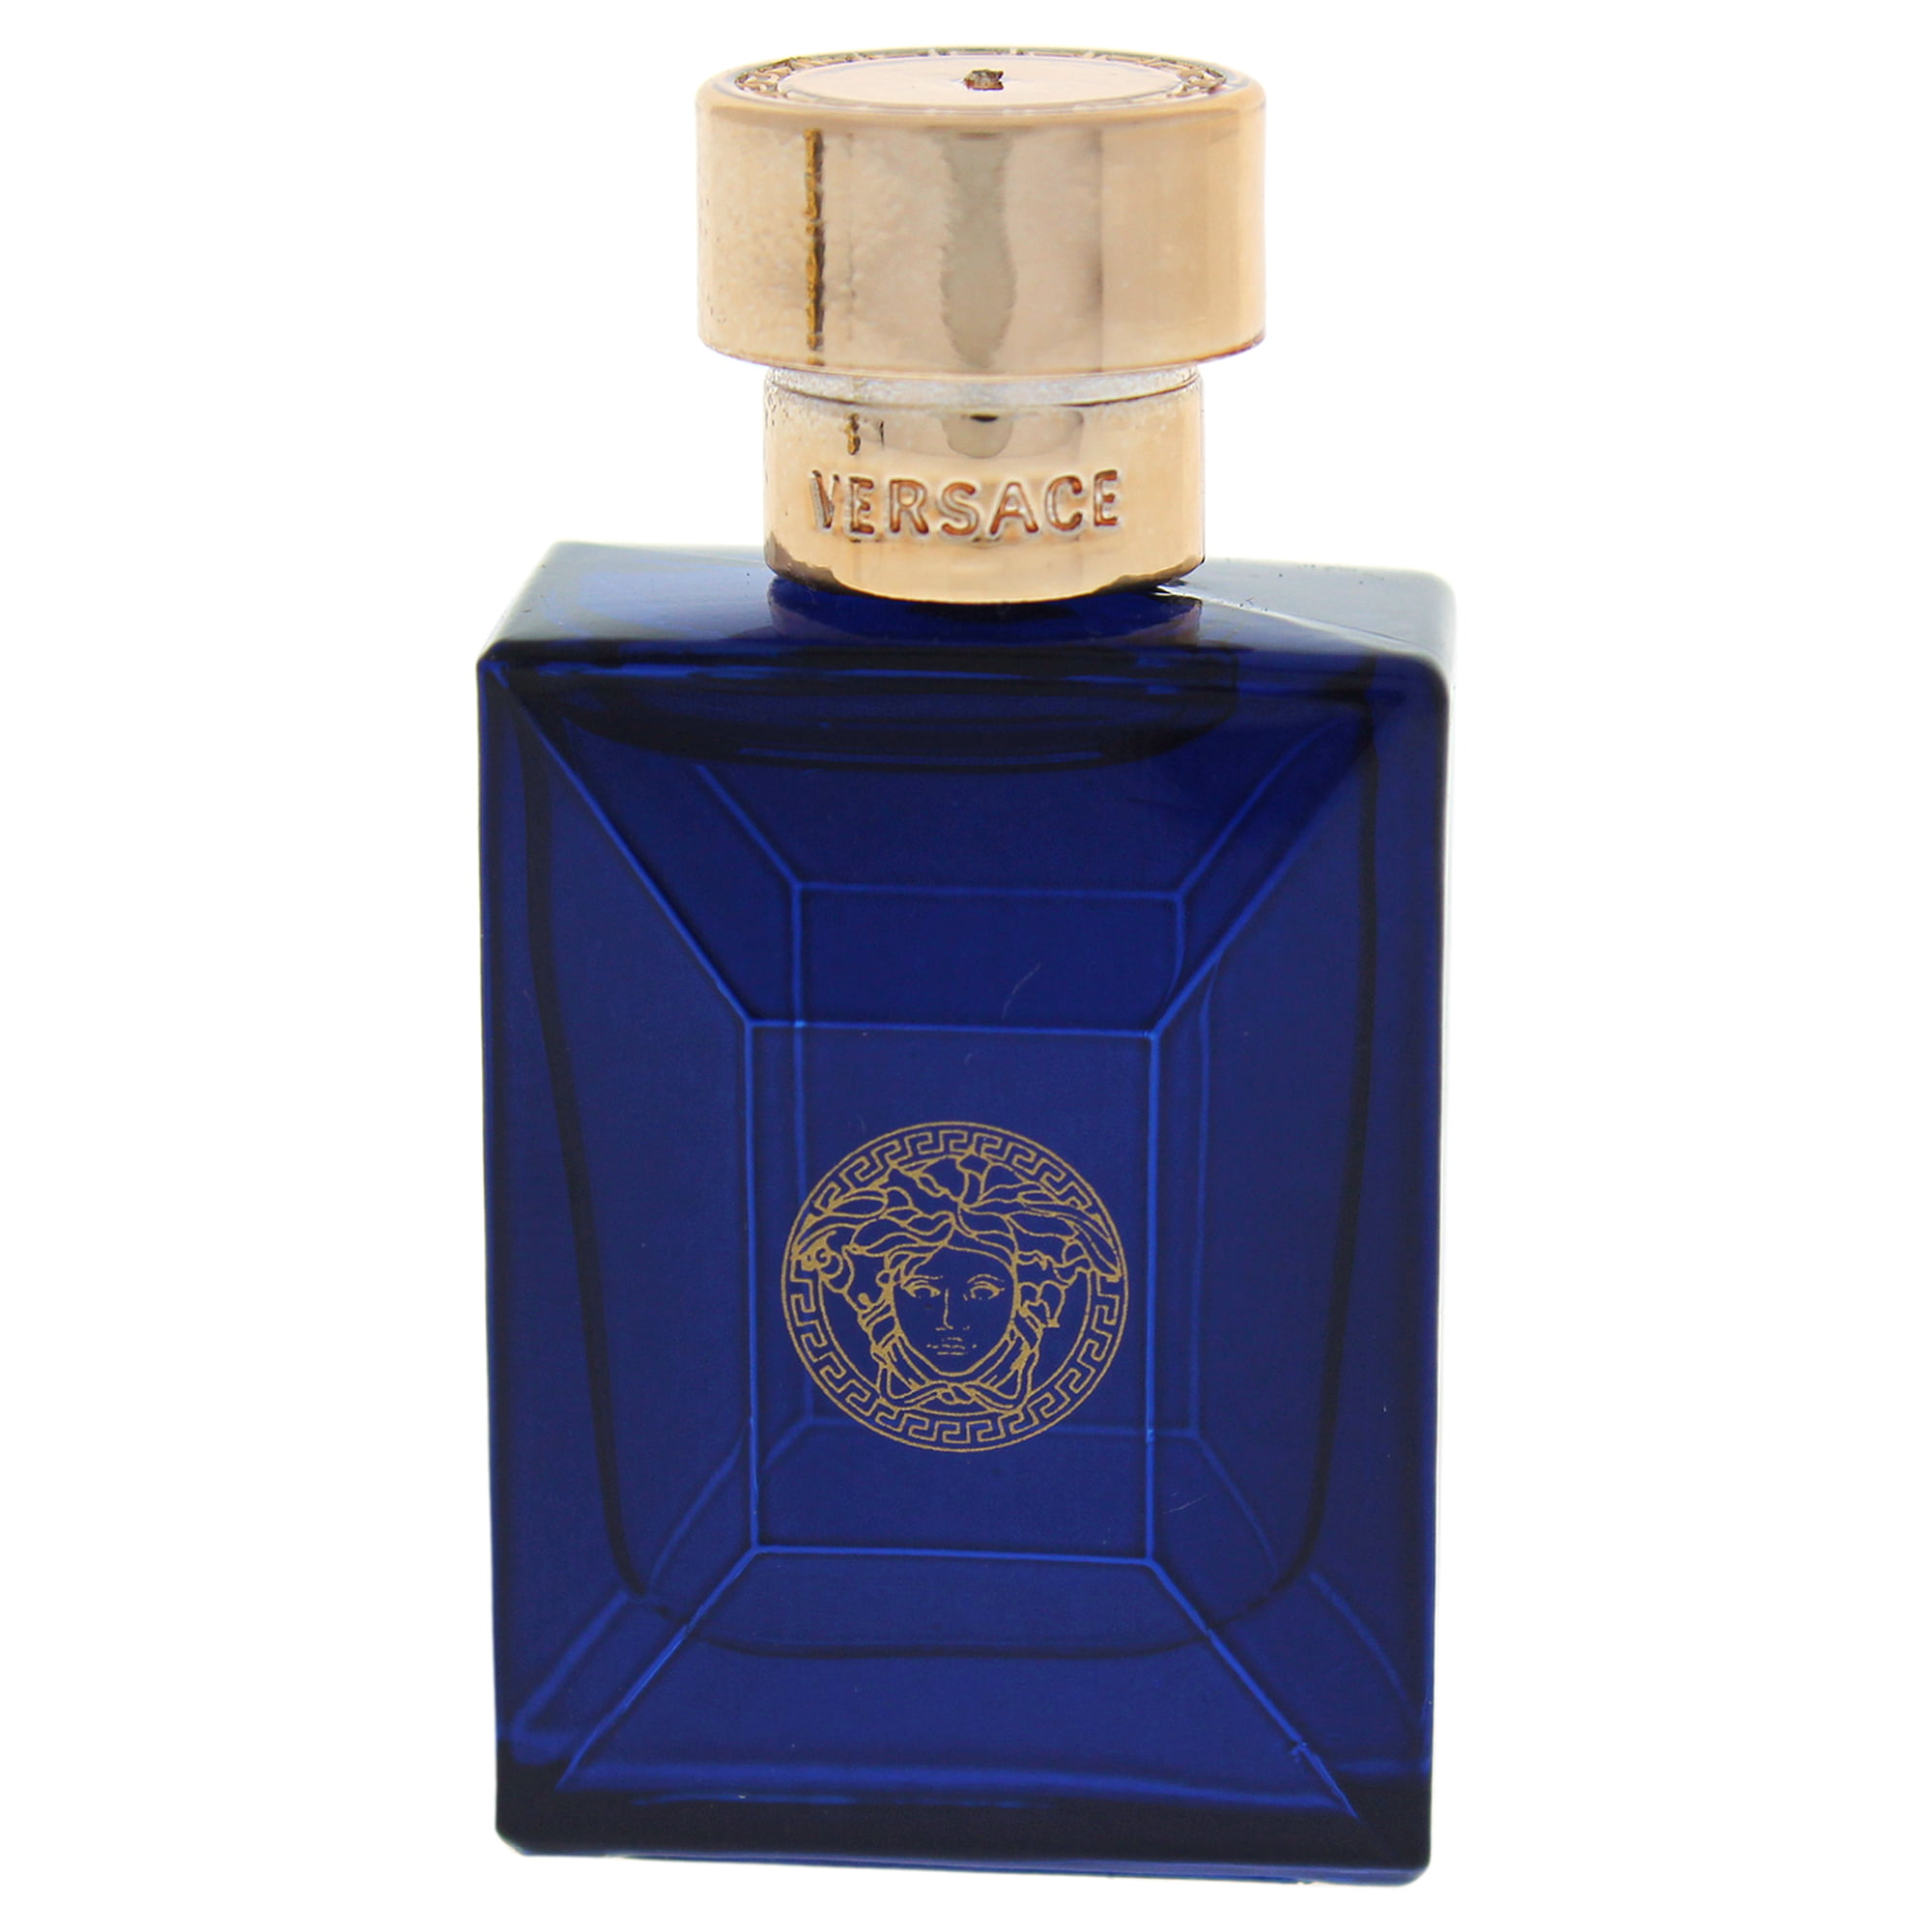 versace blue bottle cologne